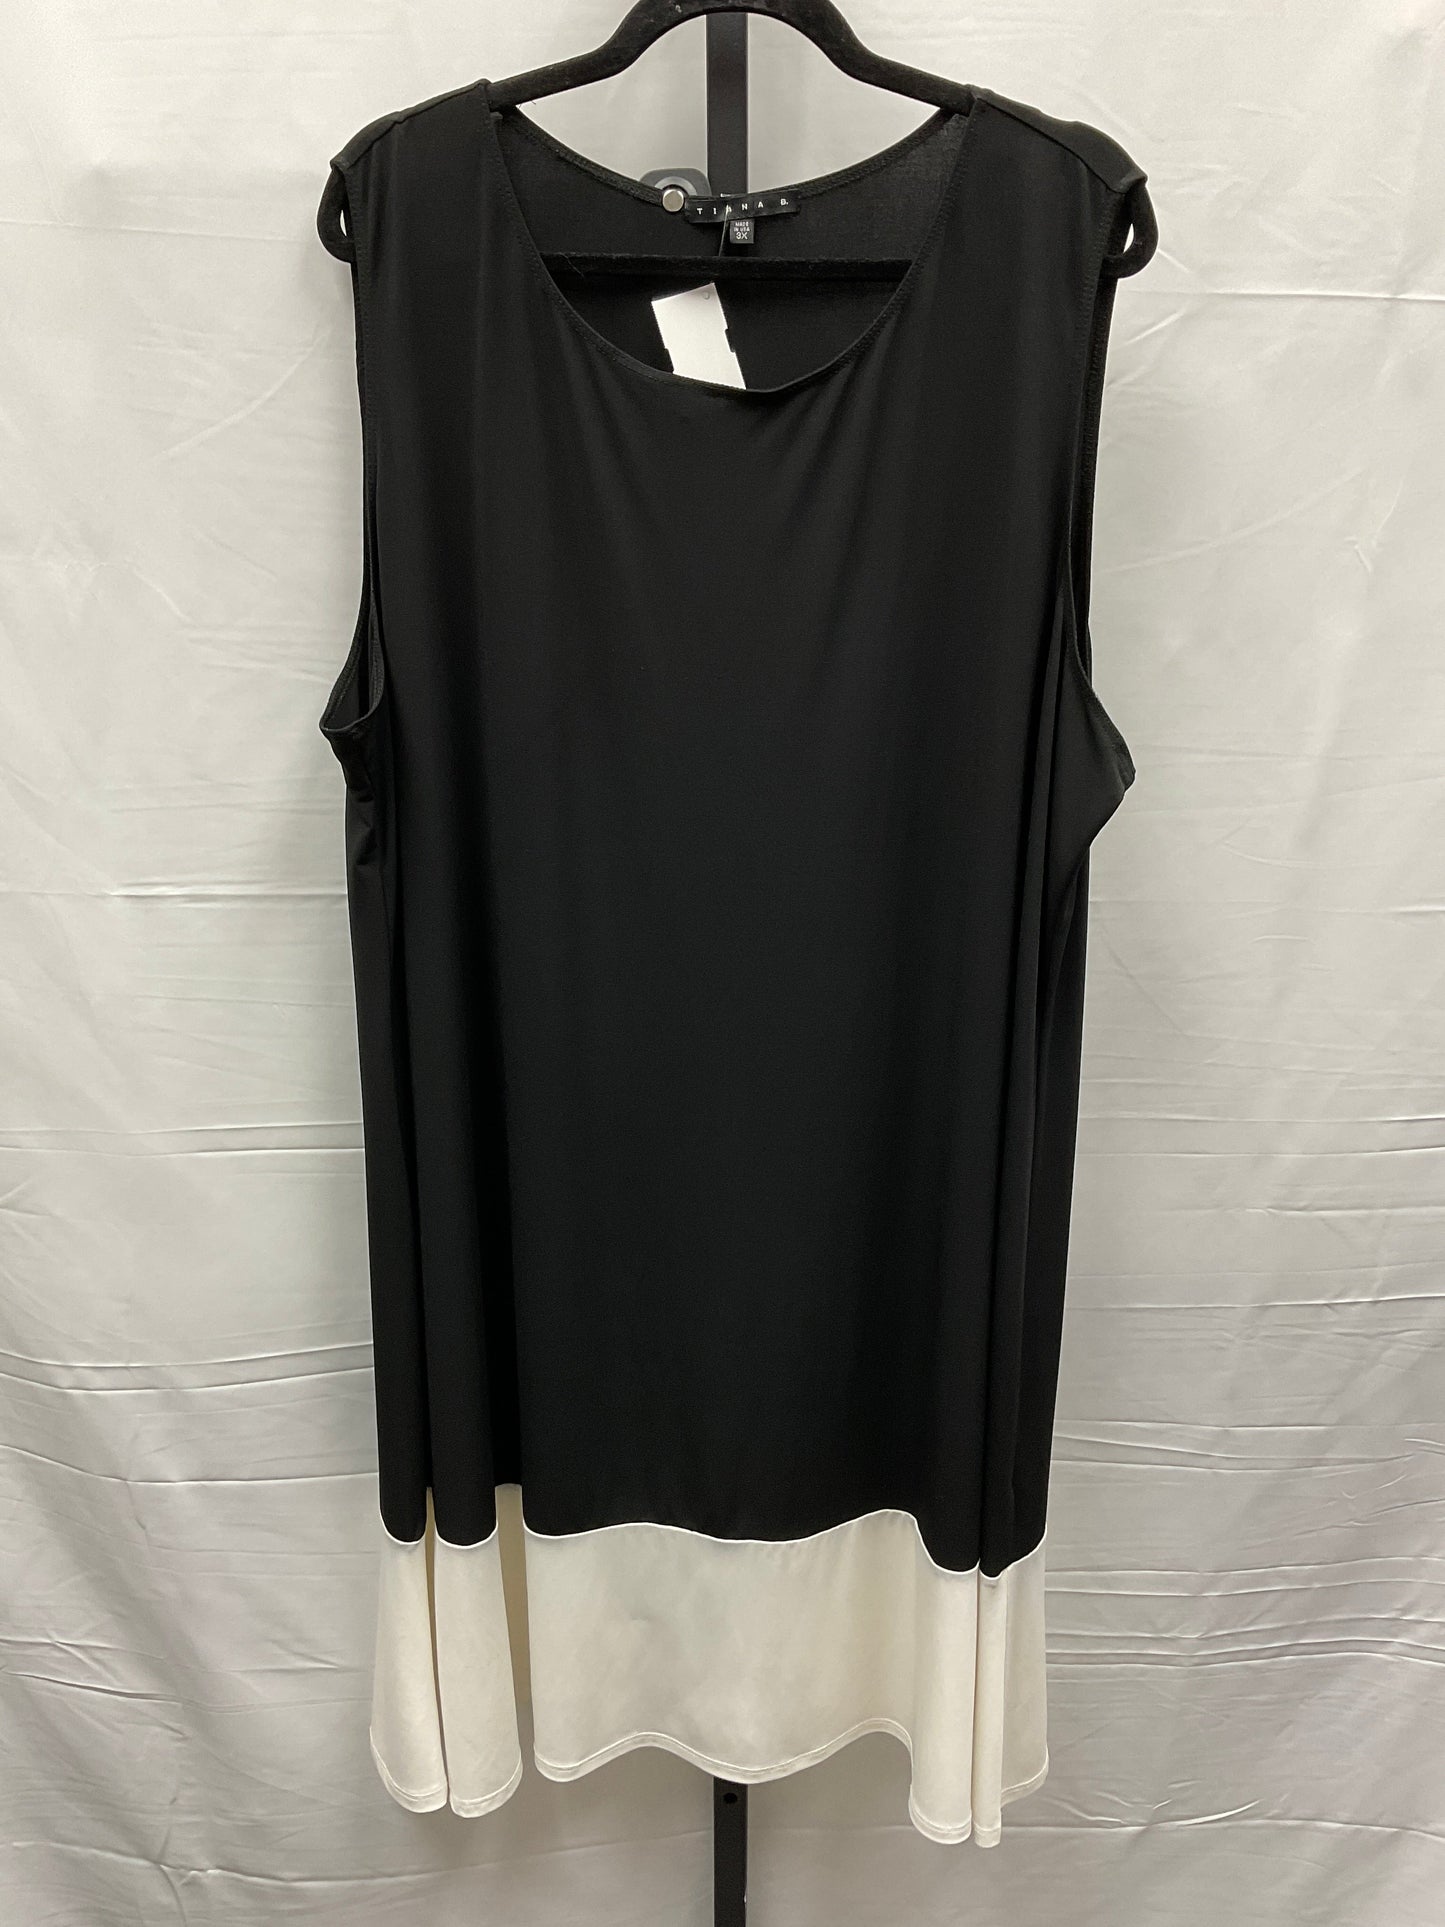 Dress Casual Midi By Tiana B  Size: 3x